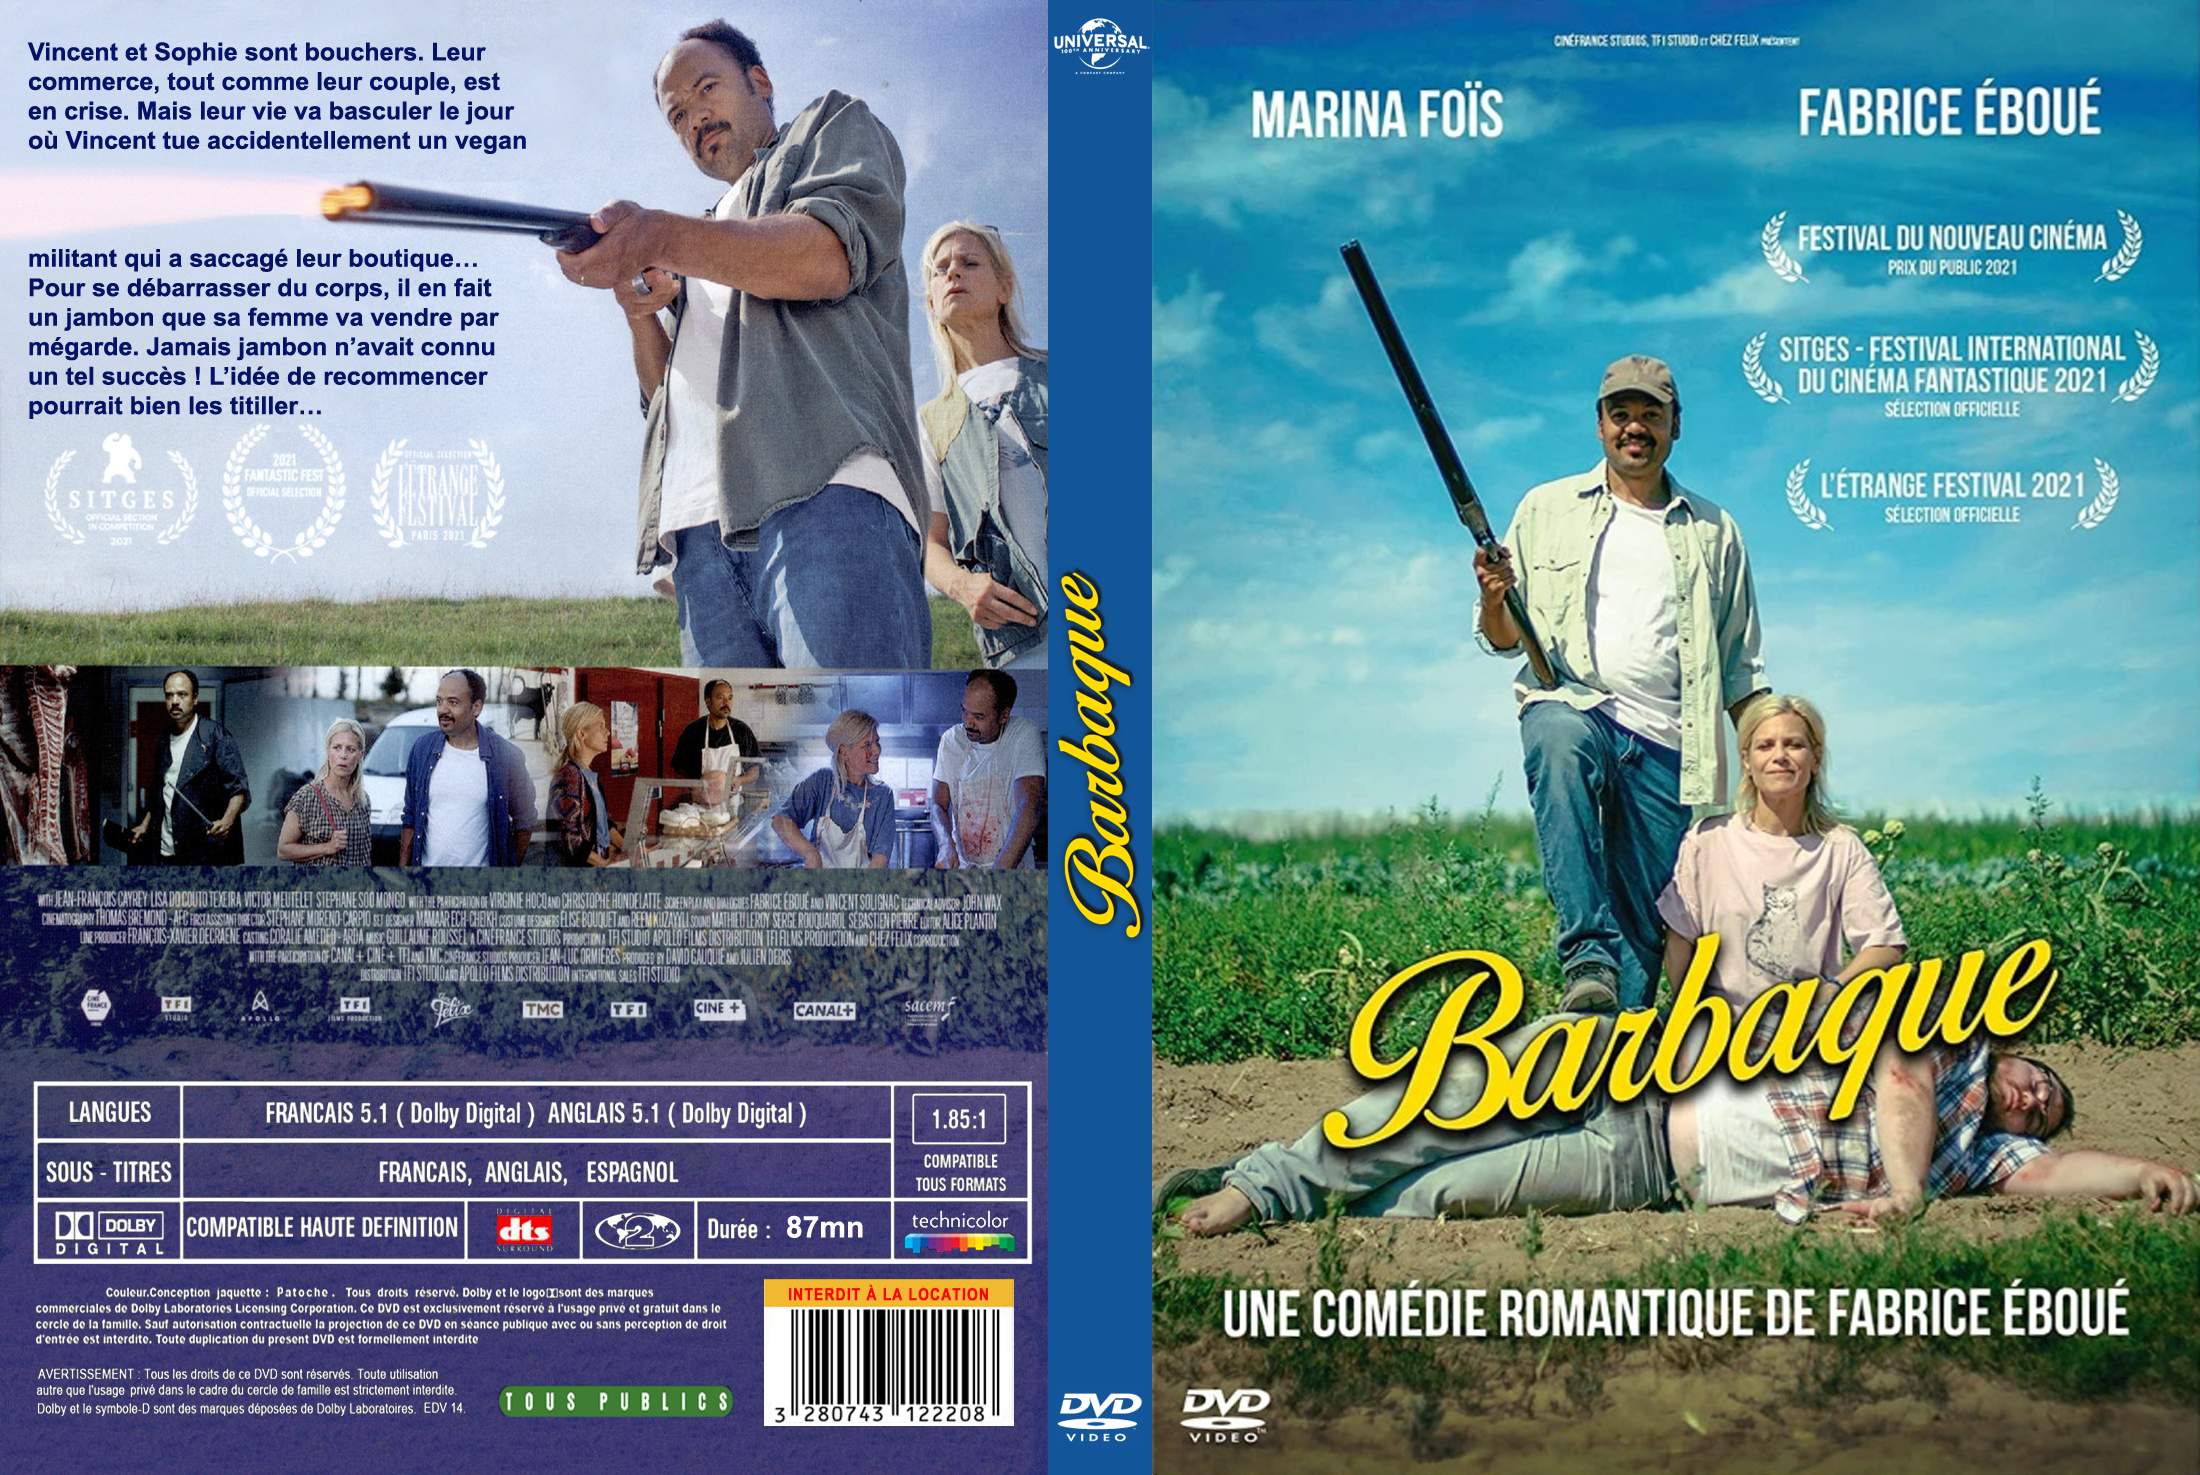 Jaquette DVD Barbaque custom